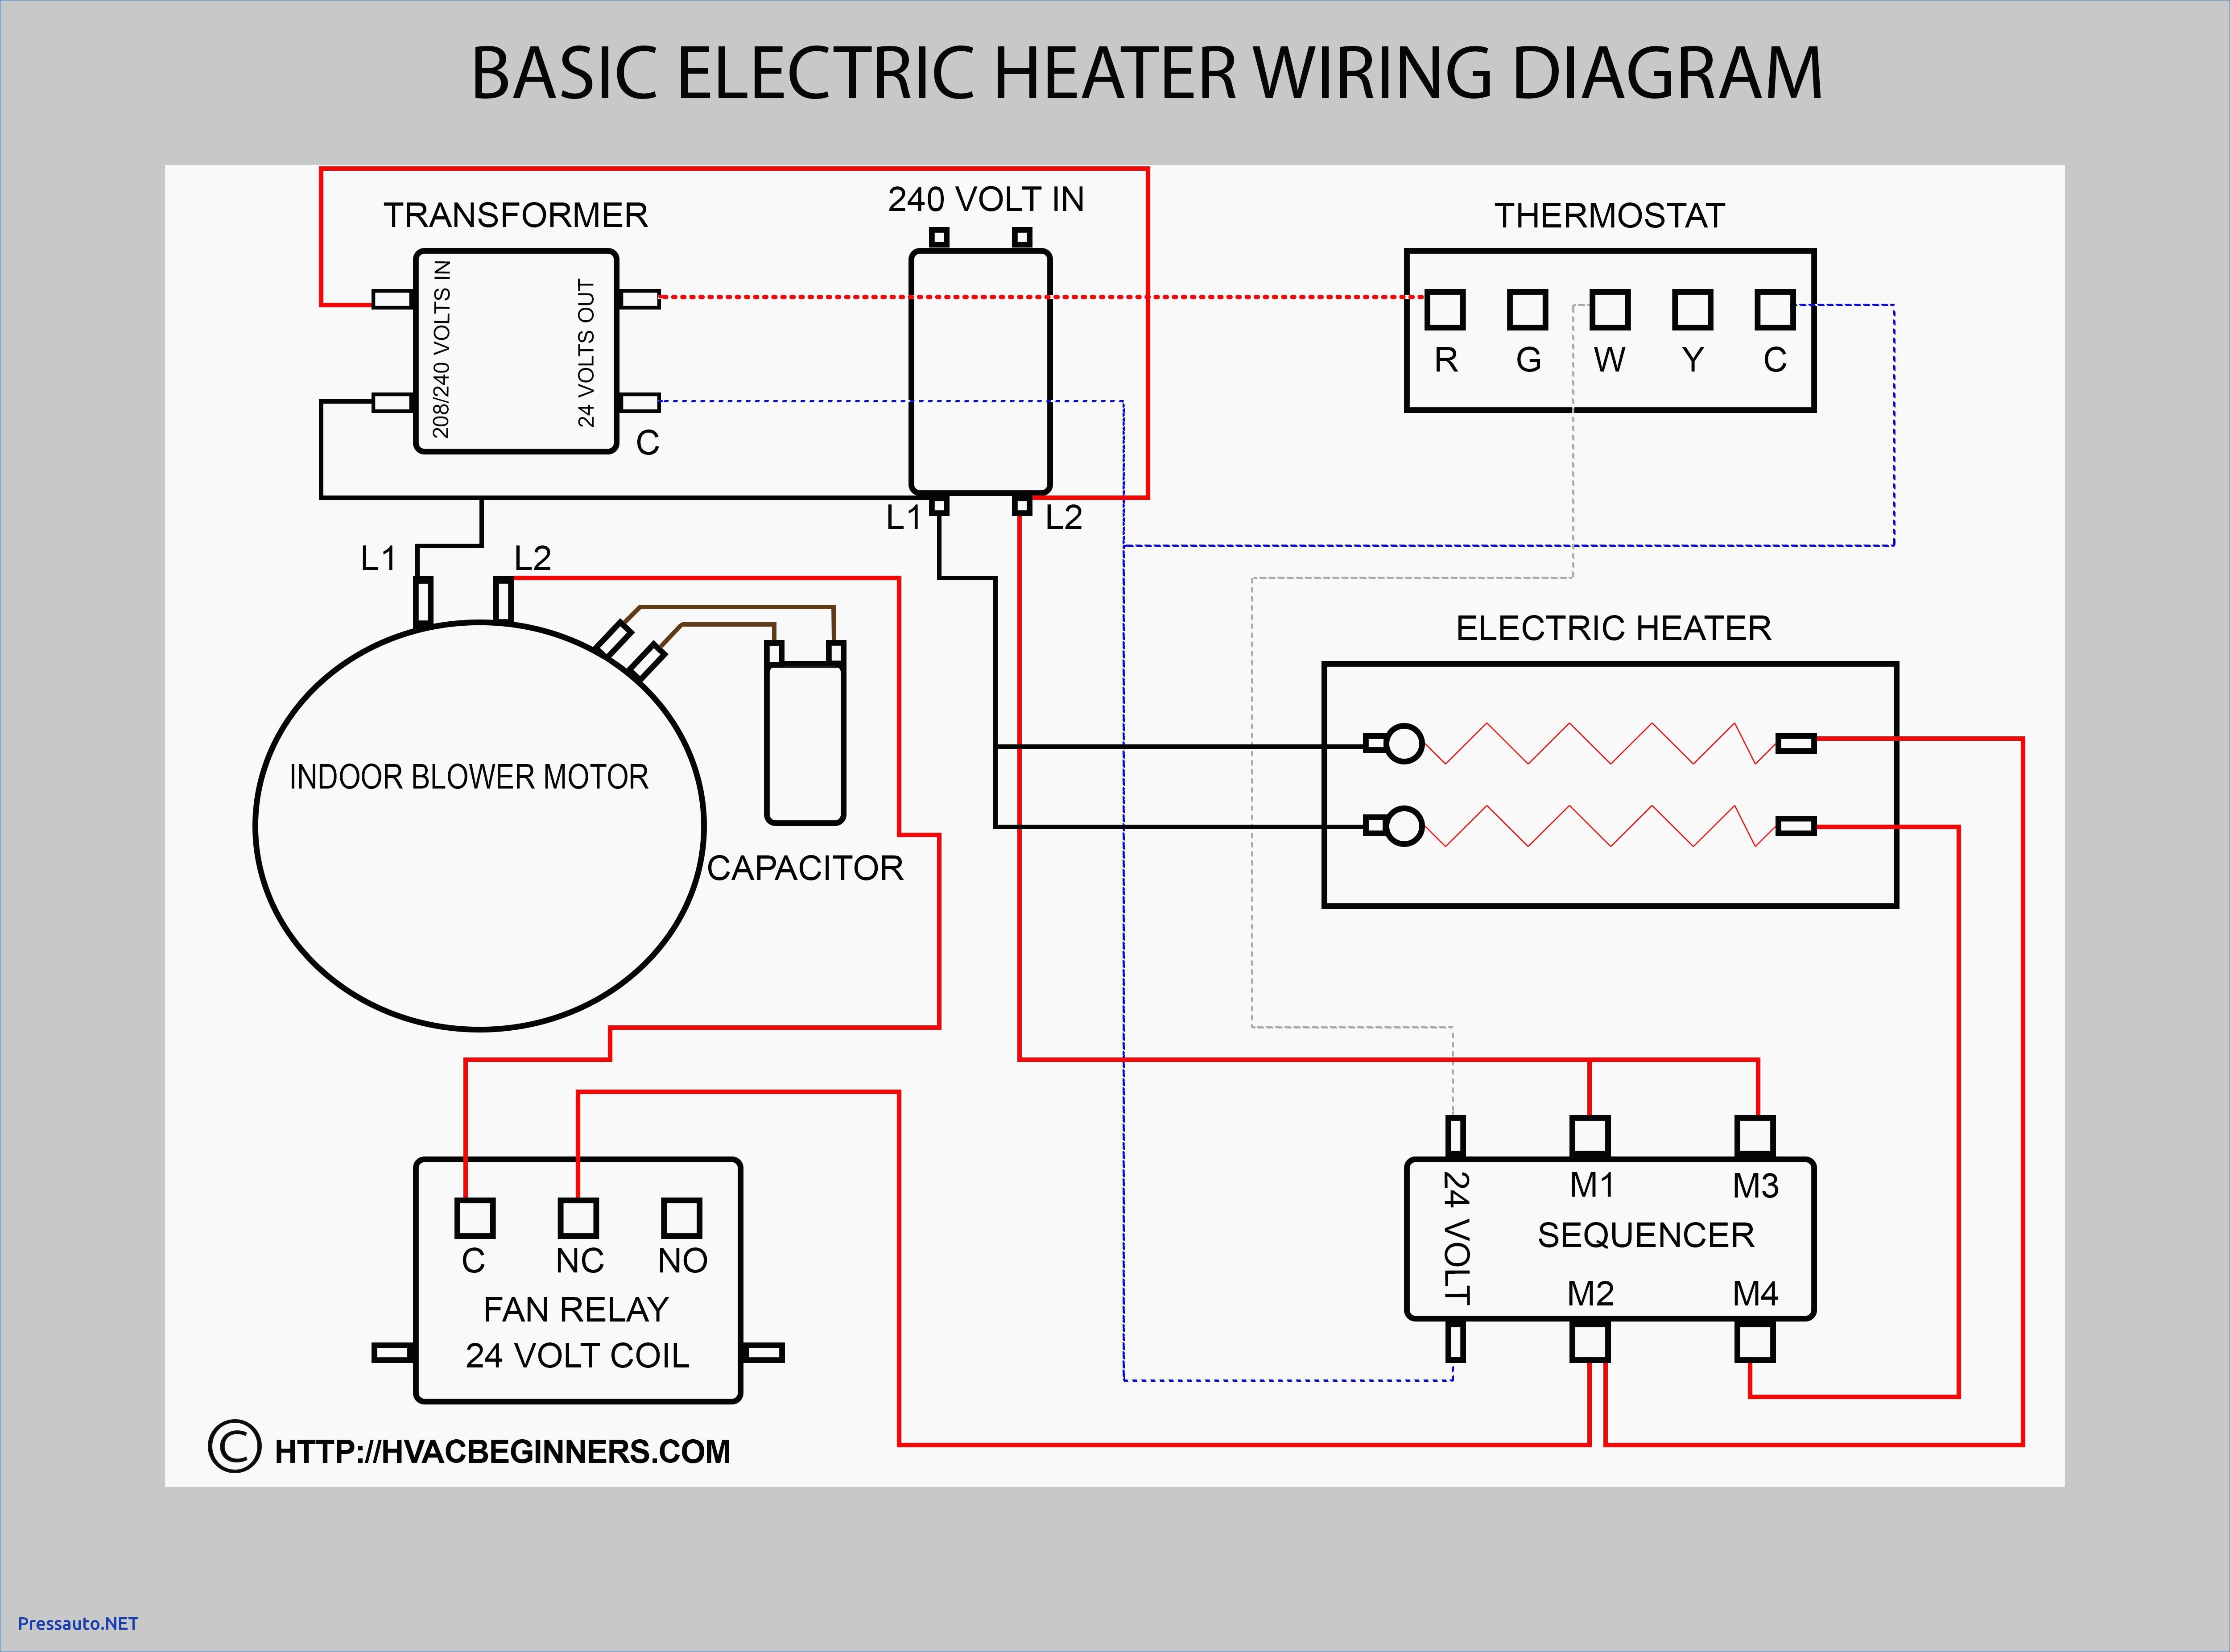 5 Way Switch Wiring Diagram Leviton Wiring Diagram 5 Way Switch Diagram 5 Way Light Switch Wiring